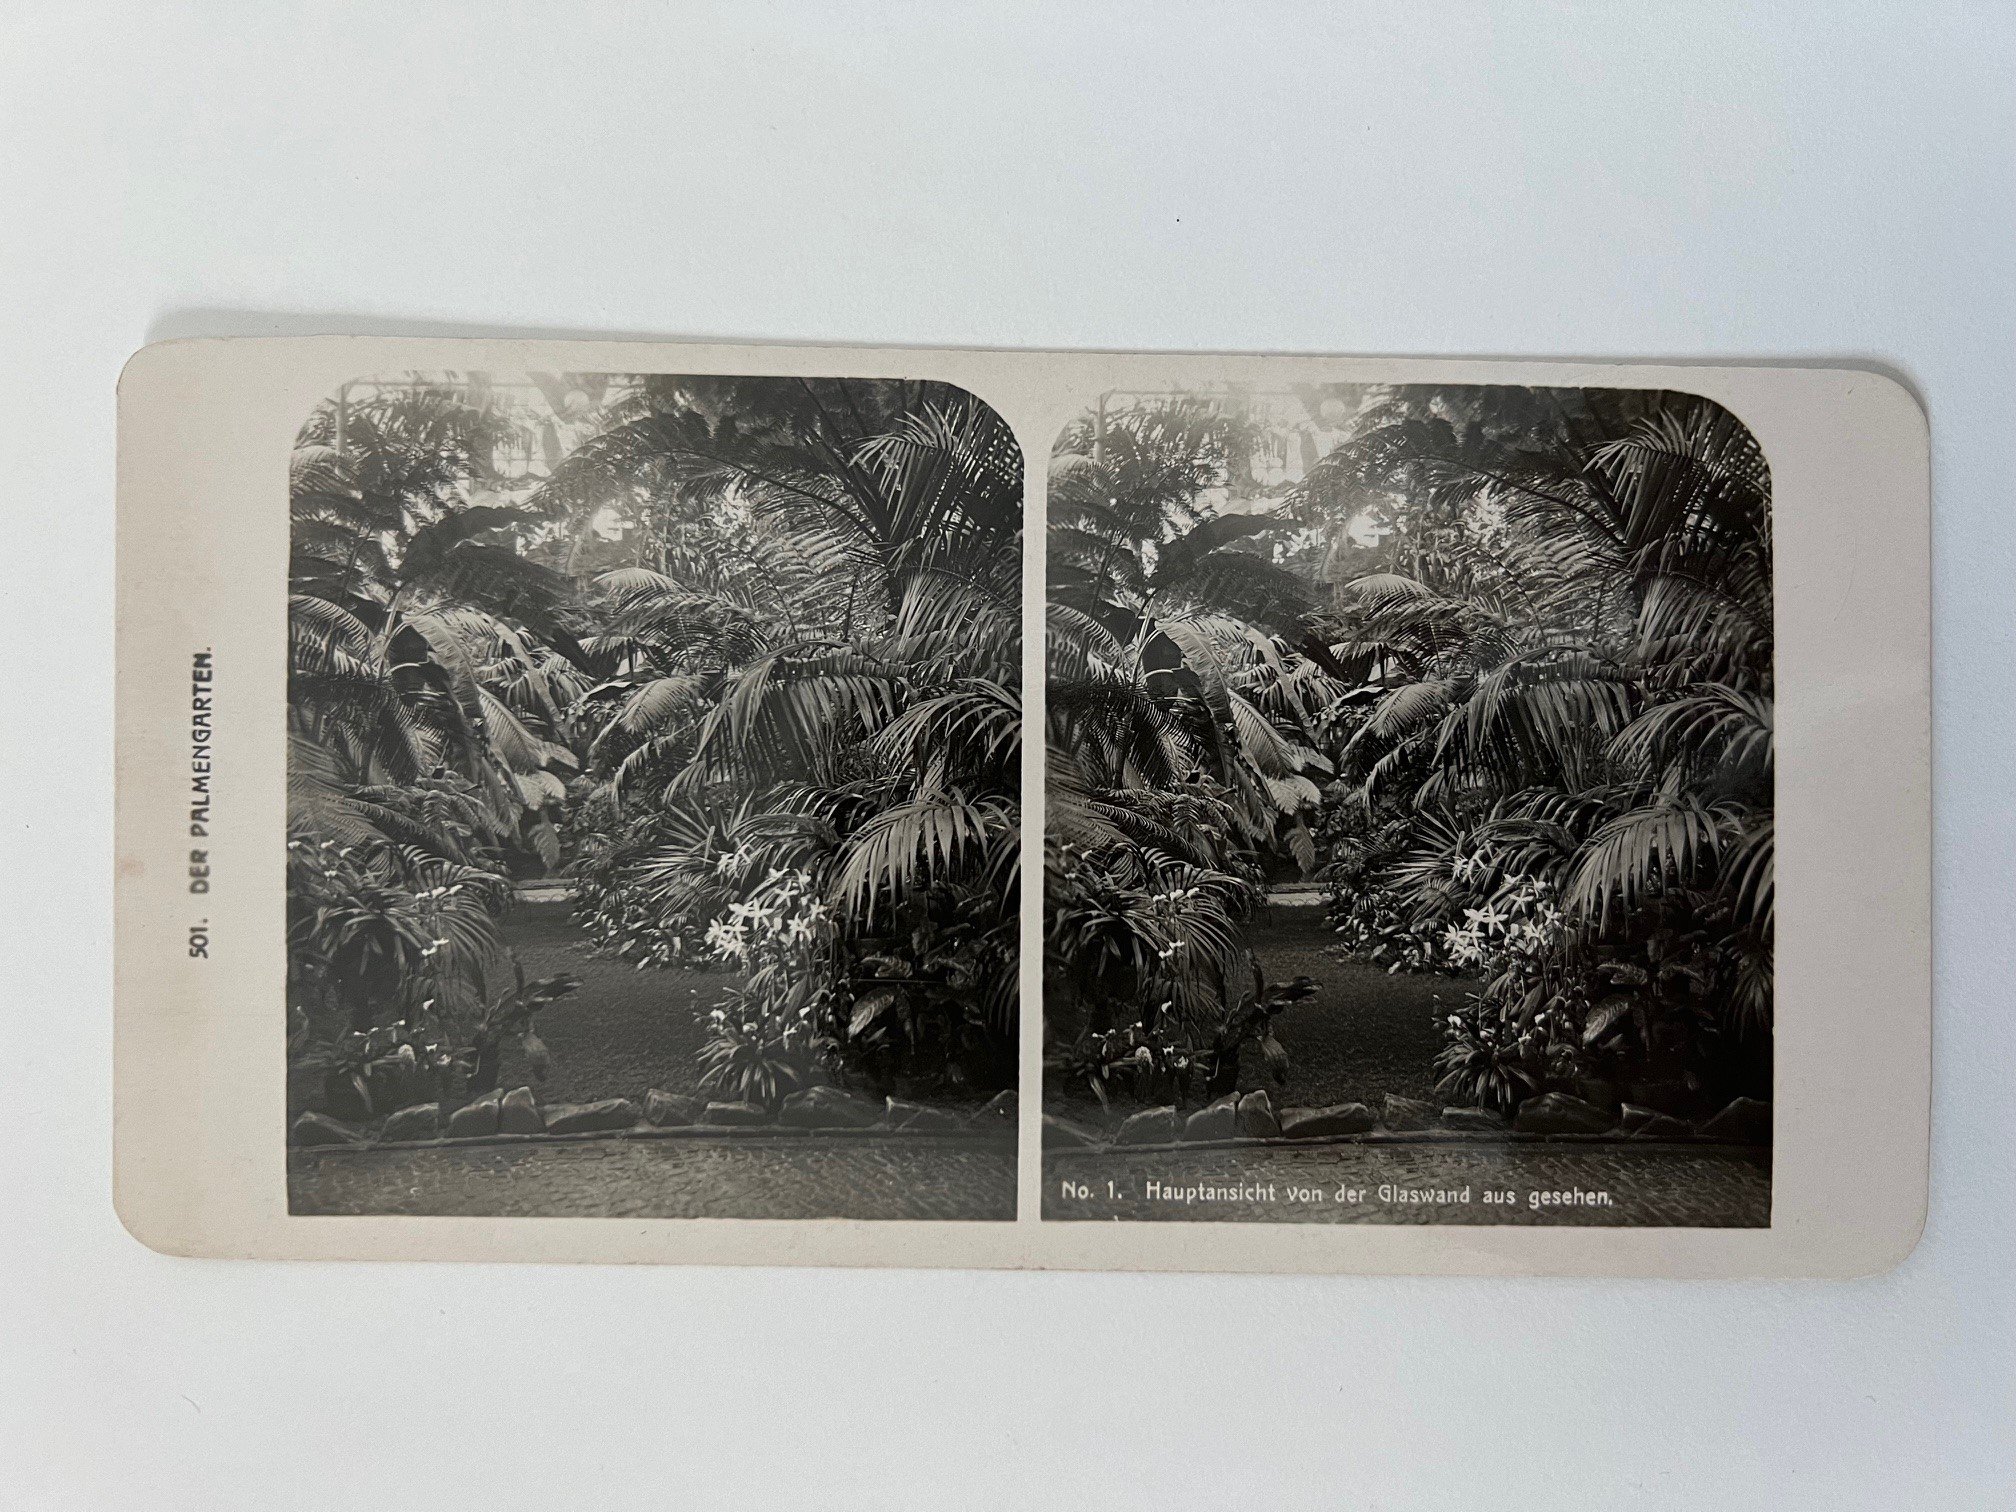 Stereobild, Unbekannter Fotograf, Frankfurt, Nr. 1, Der Palmengarten, Hauptansicht von der Glaswand aus gesehen, ca. 1914. (Taunus-Rhein-Main - Regionalgeschichtliche Sammlung Dr. Stefan Naas CC BY-NC-SA)